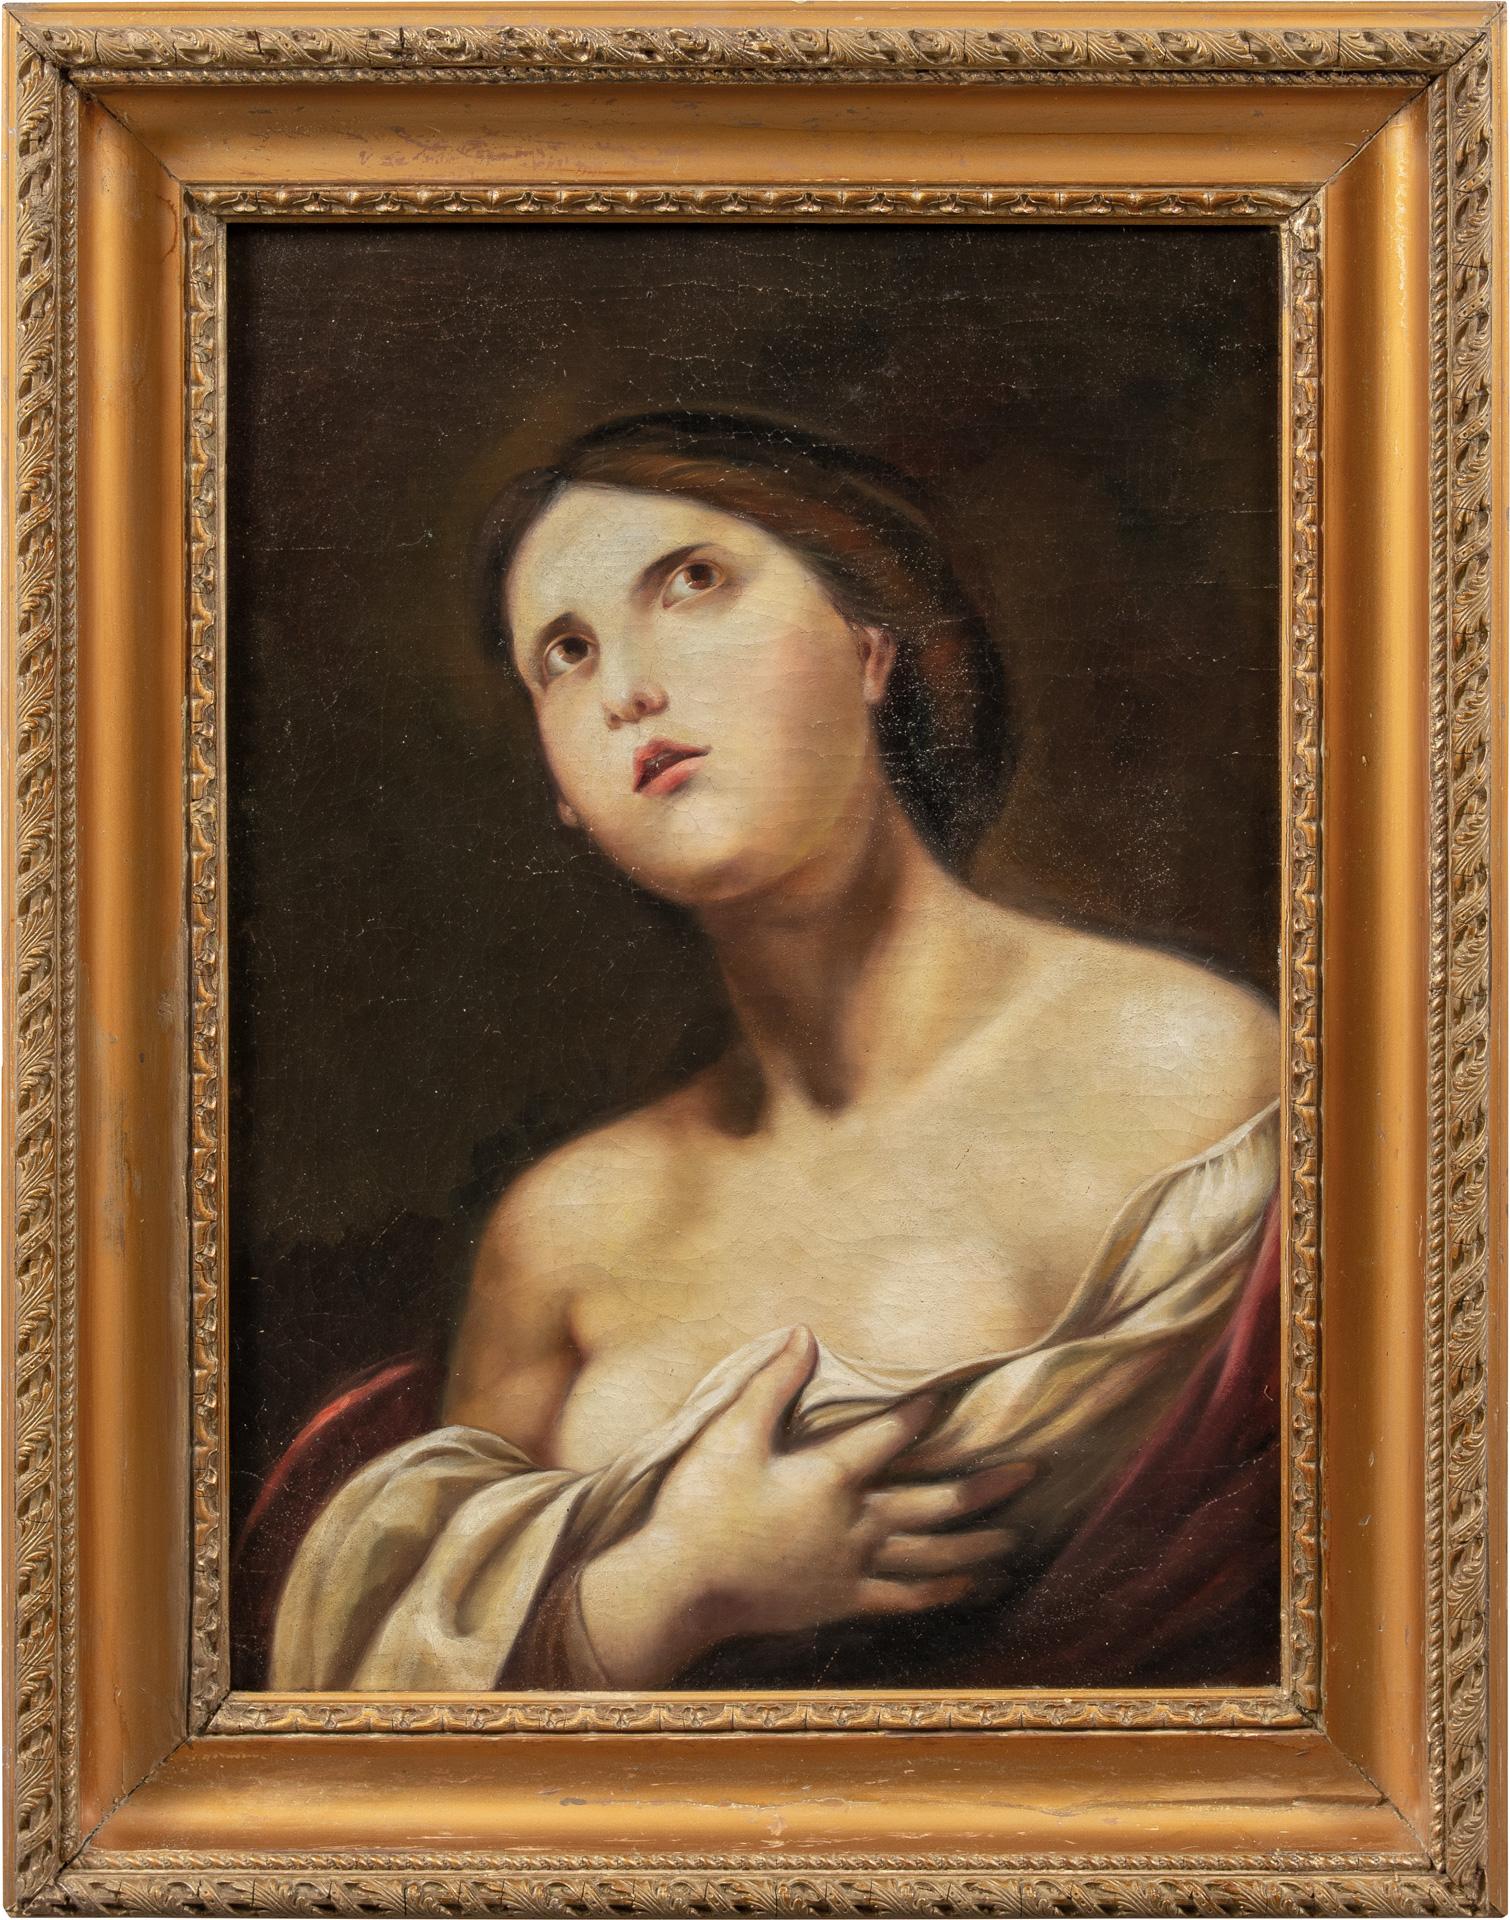 Unknown Portrait Painting – Antiker italienischer Maler – Figurenmalerei des 18. bis 19. Jahrhunderts – Öl auf Leinwand